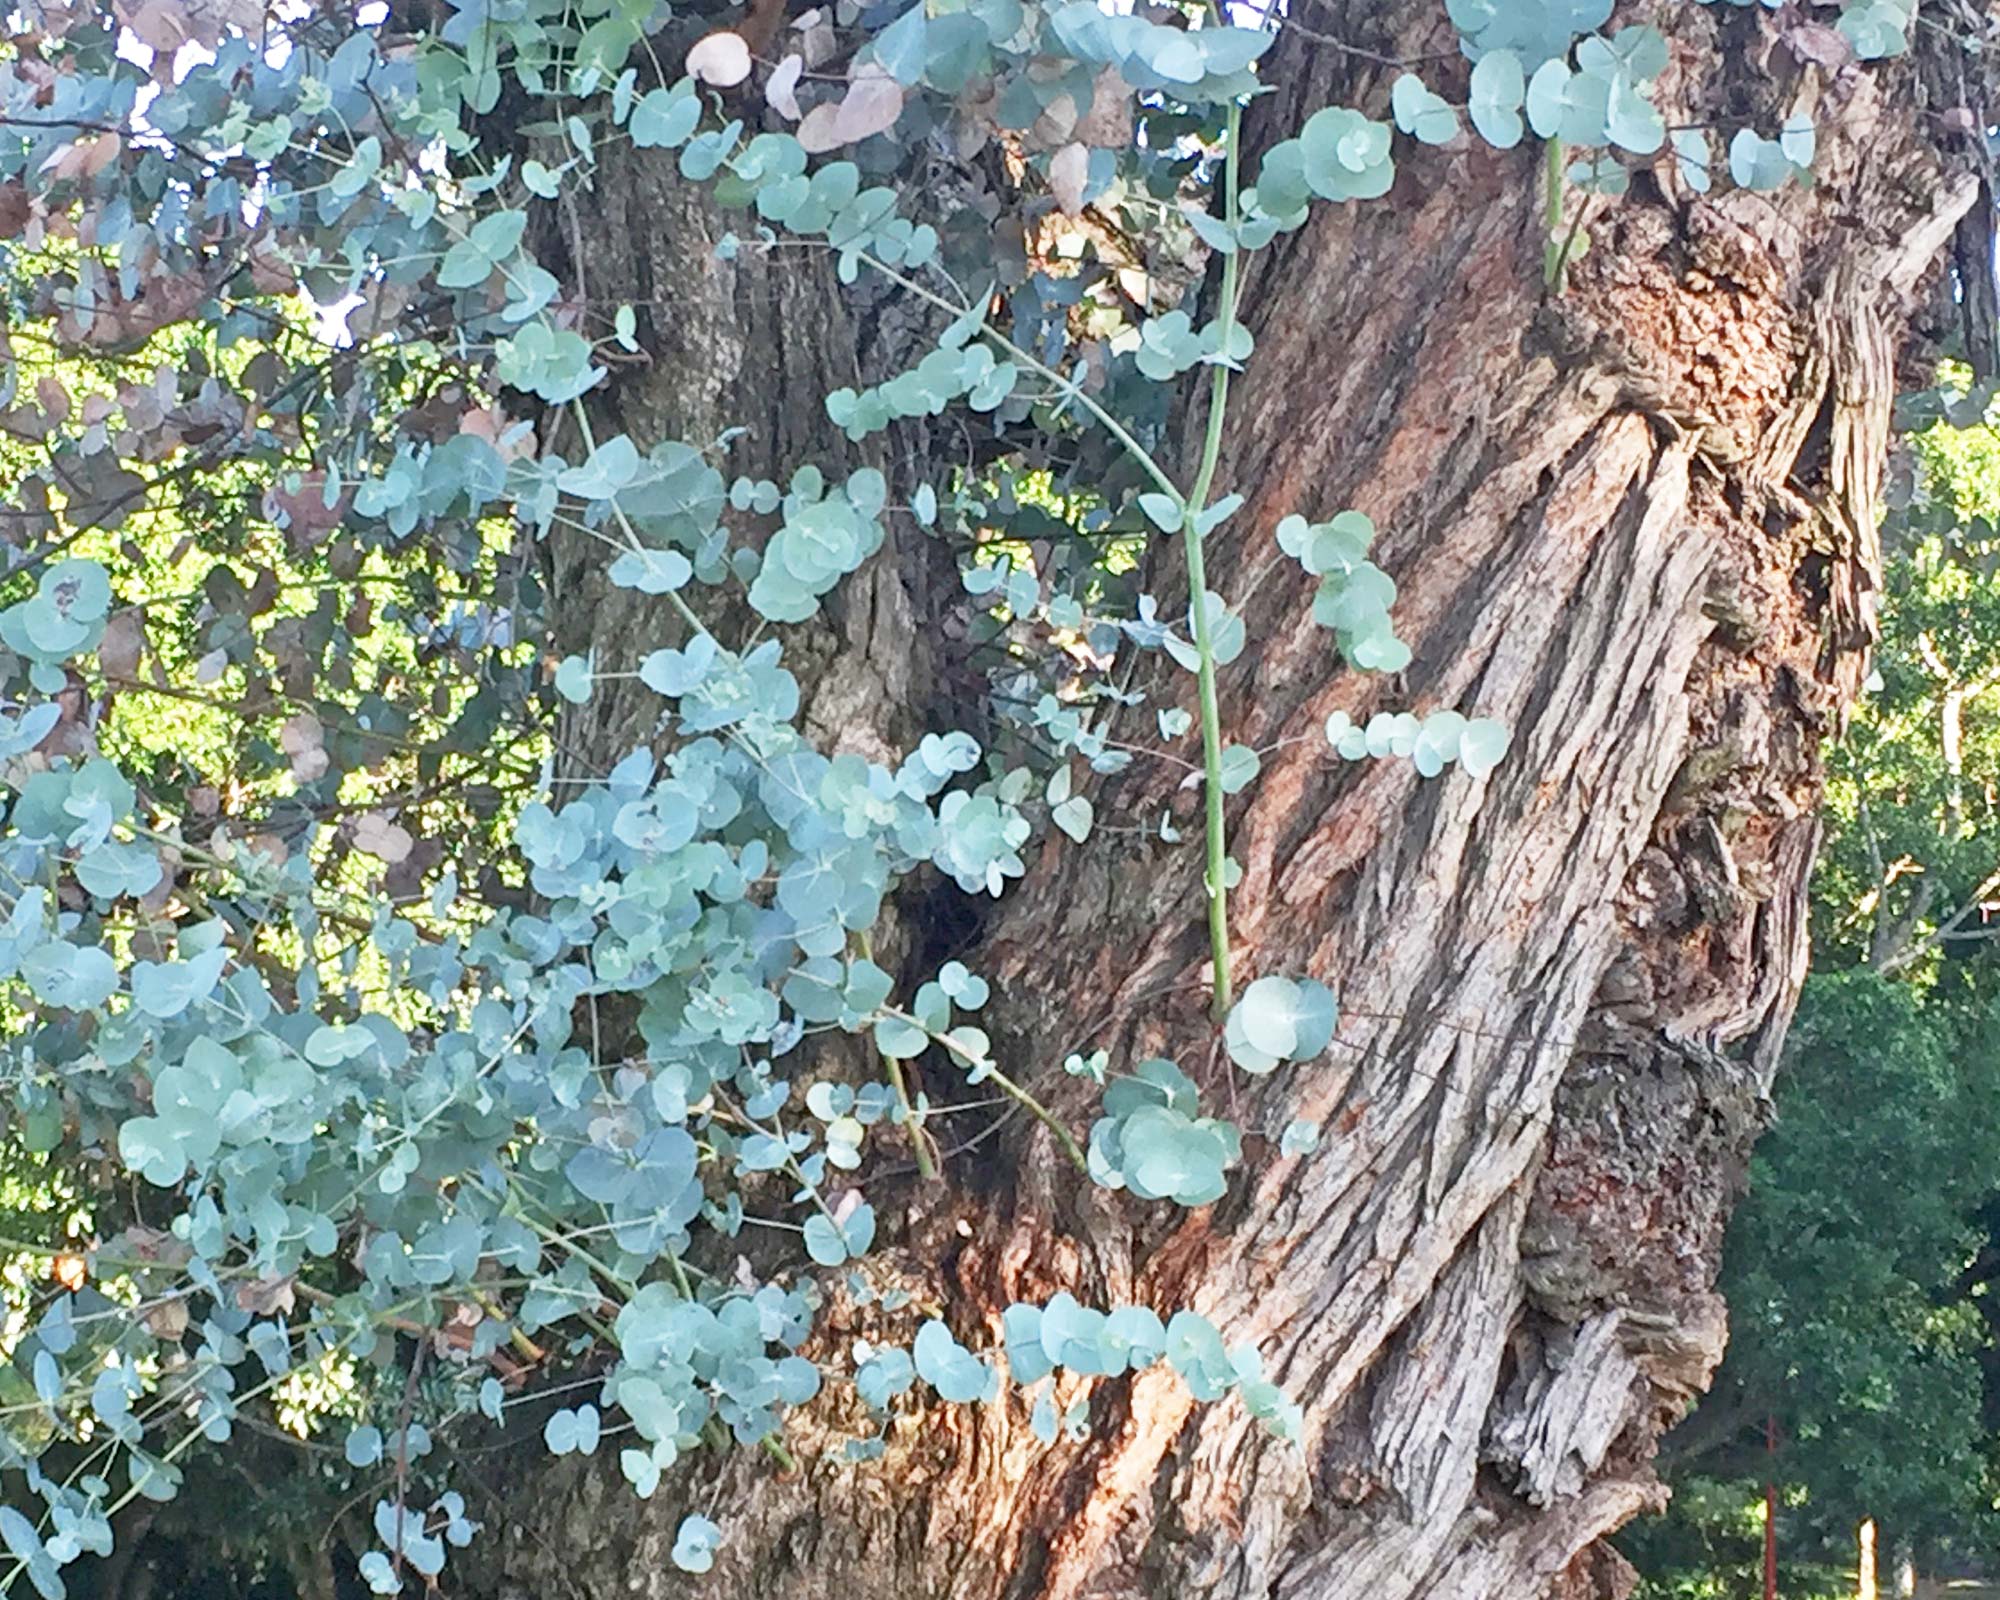 Eucalyptus cinerea - Argyle Apple